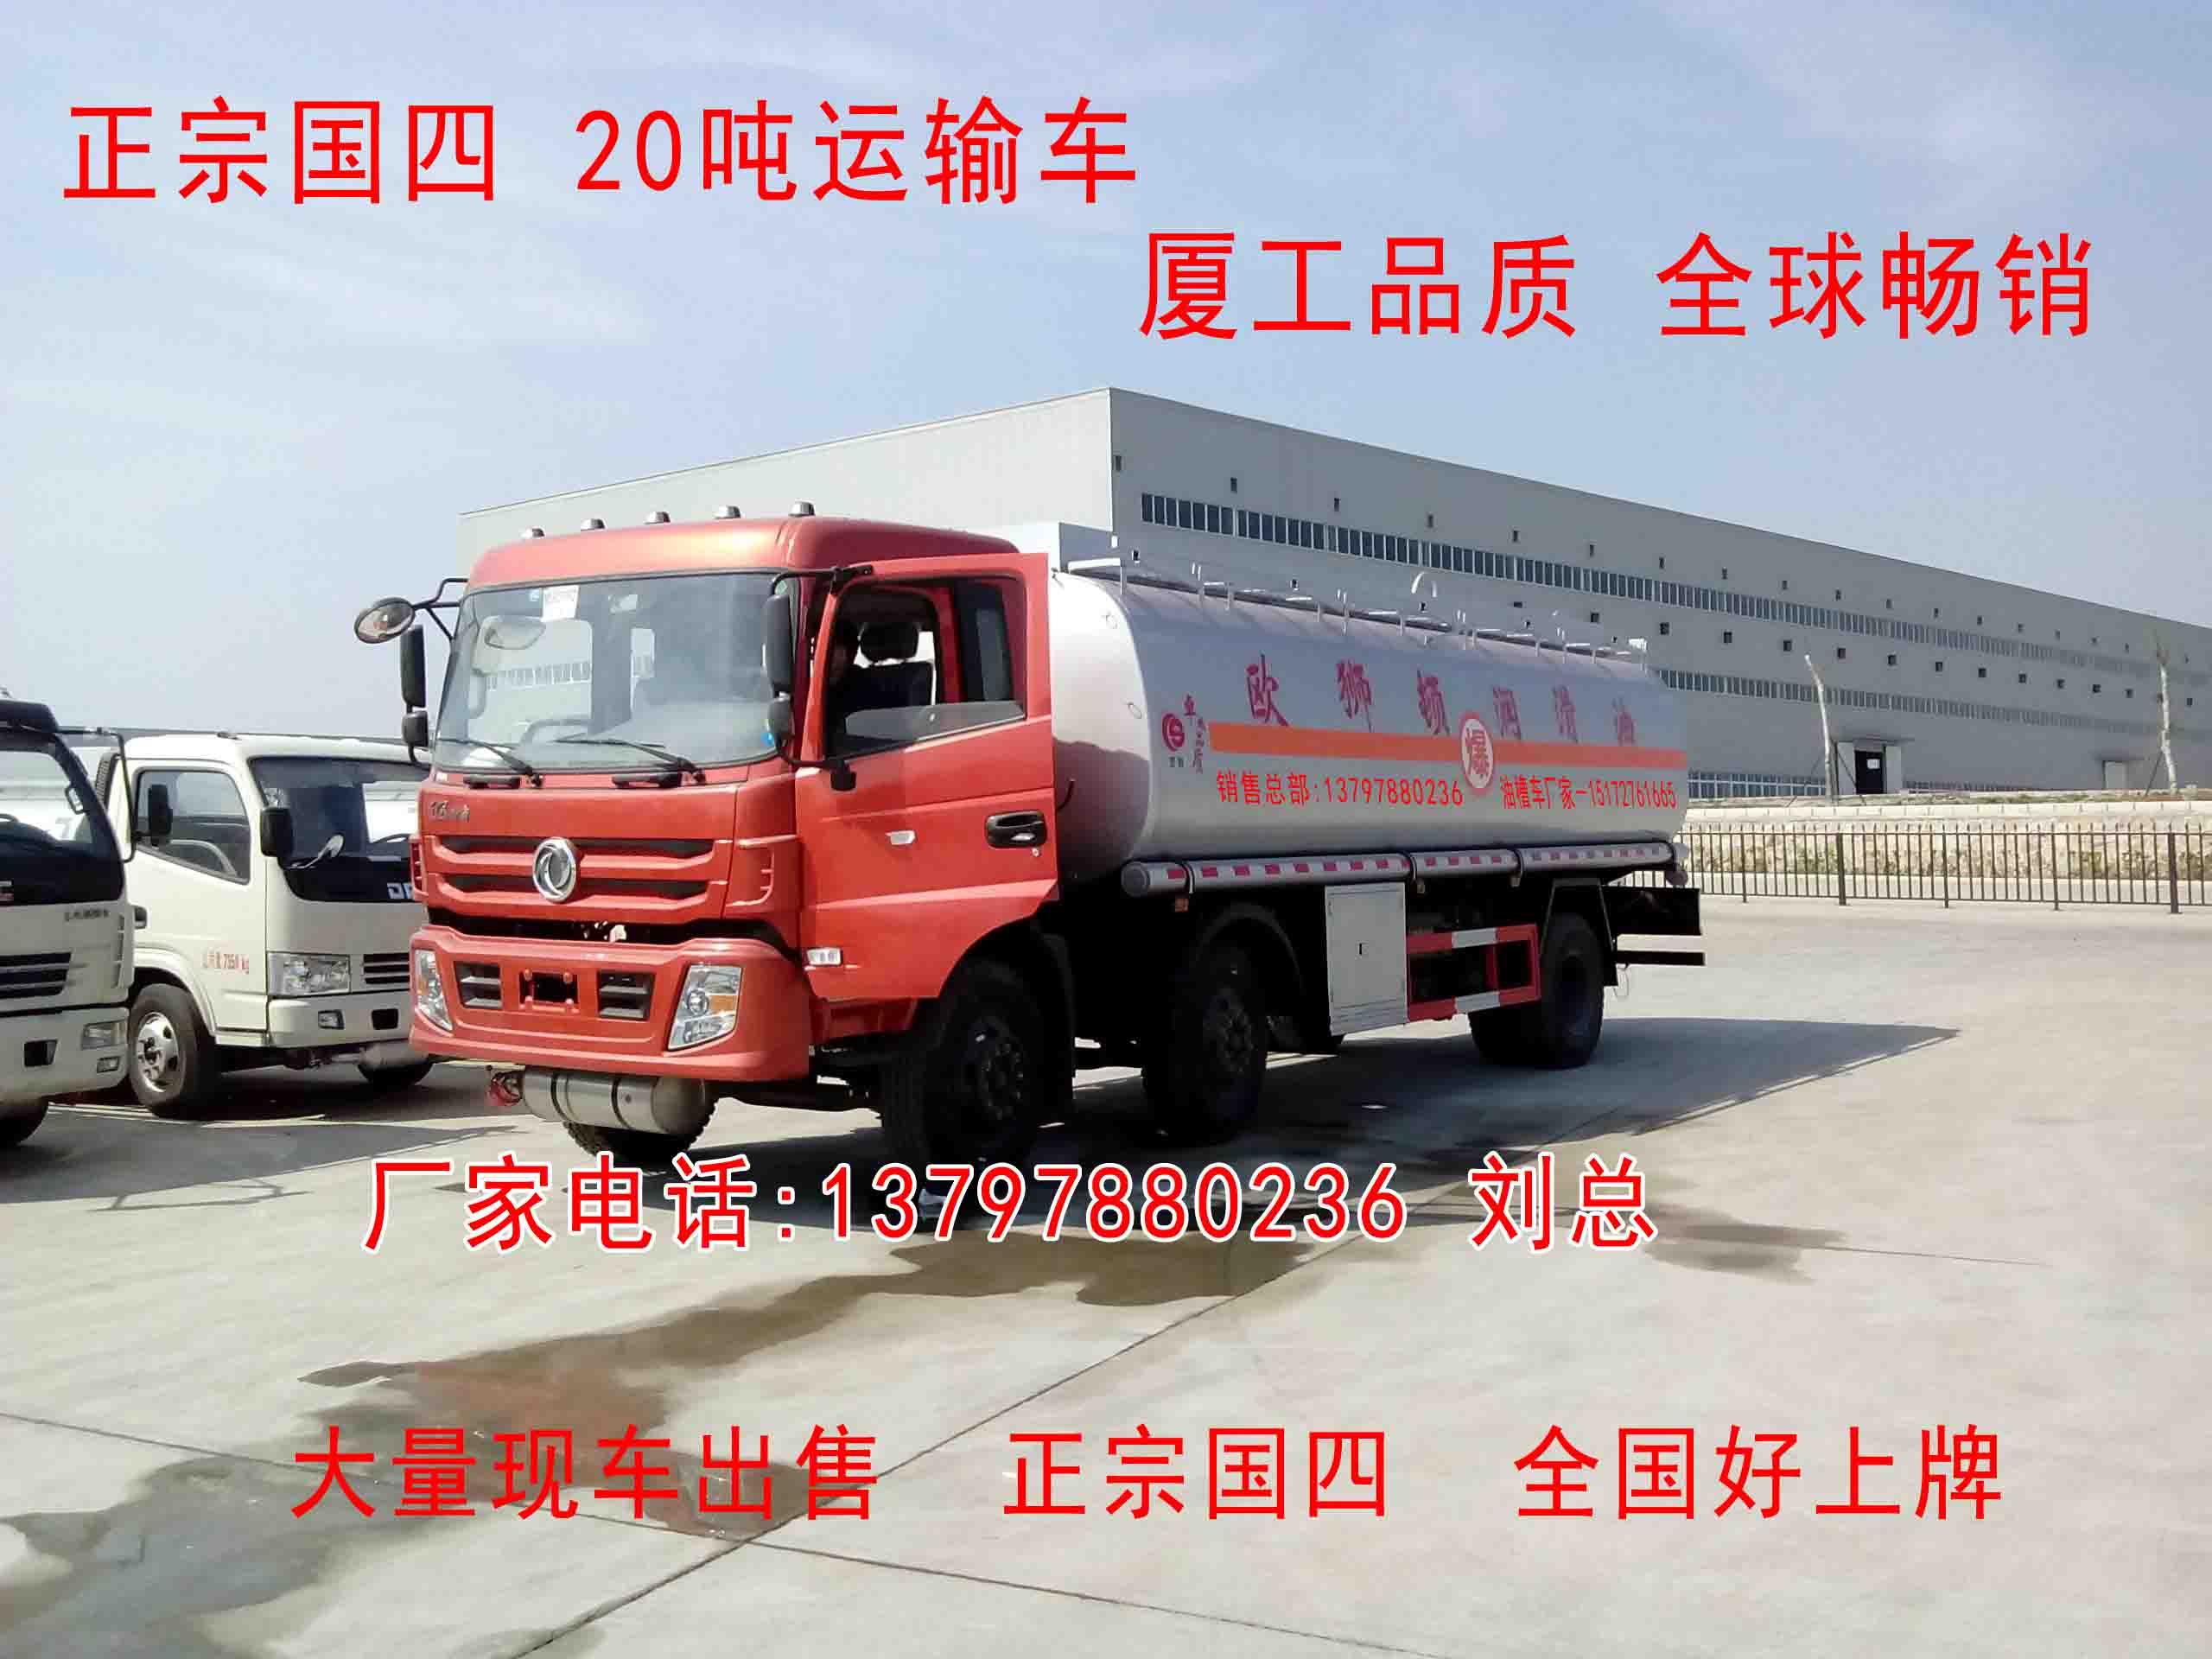 国四东风小三轴20吨润滑油运输车,厂家价格13797880236